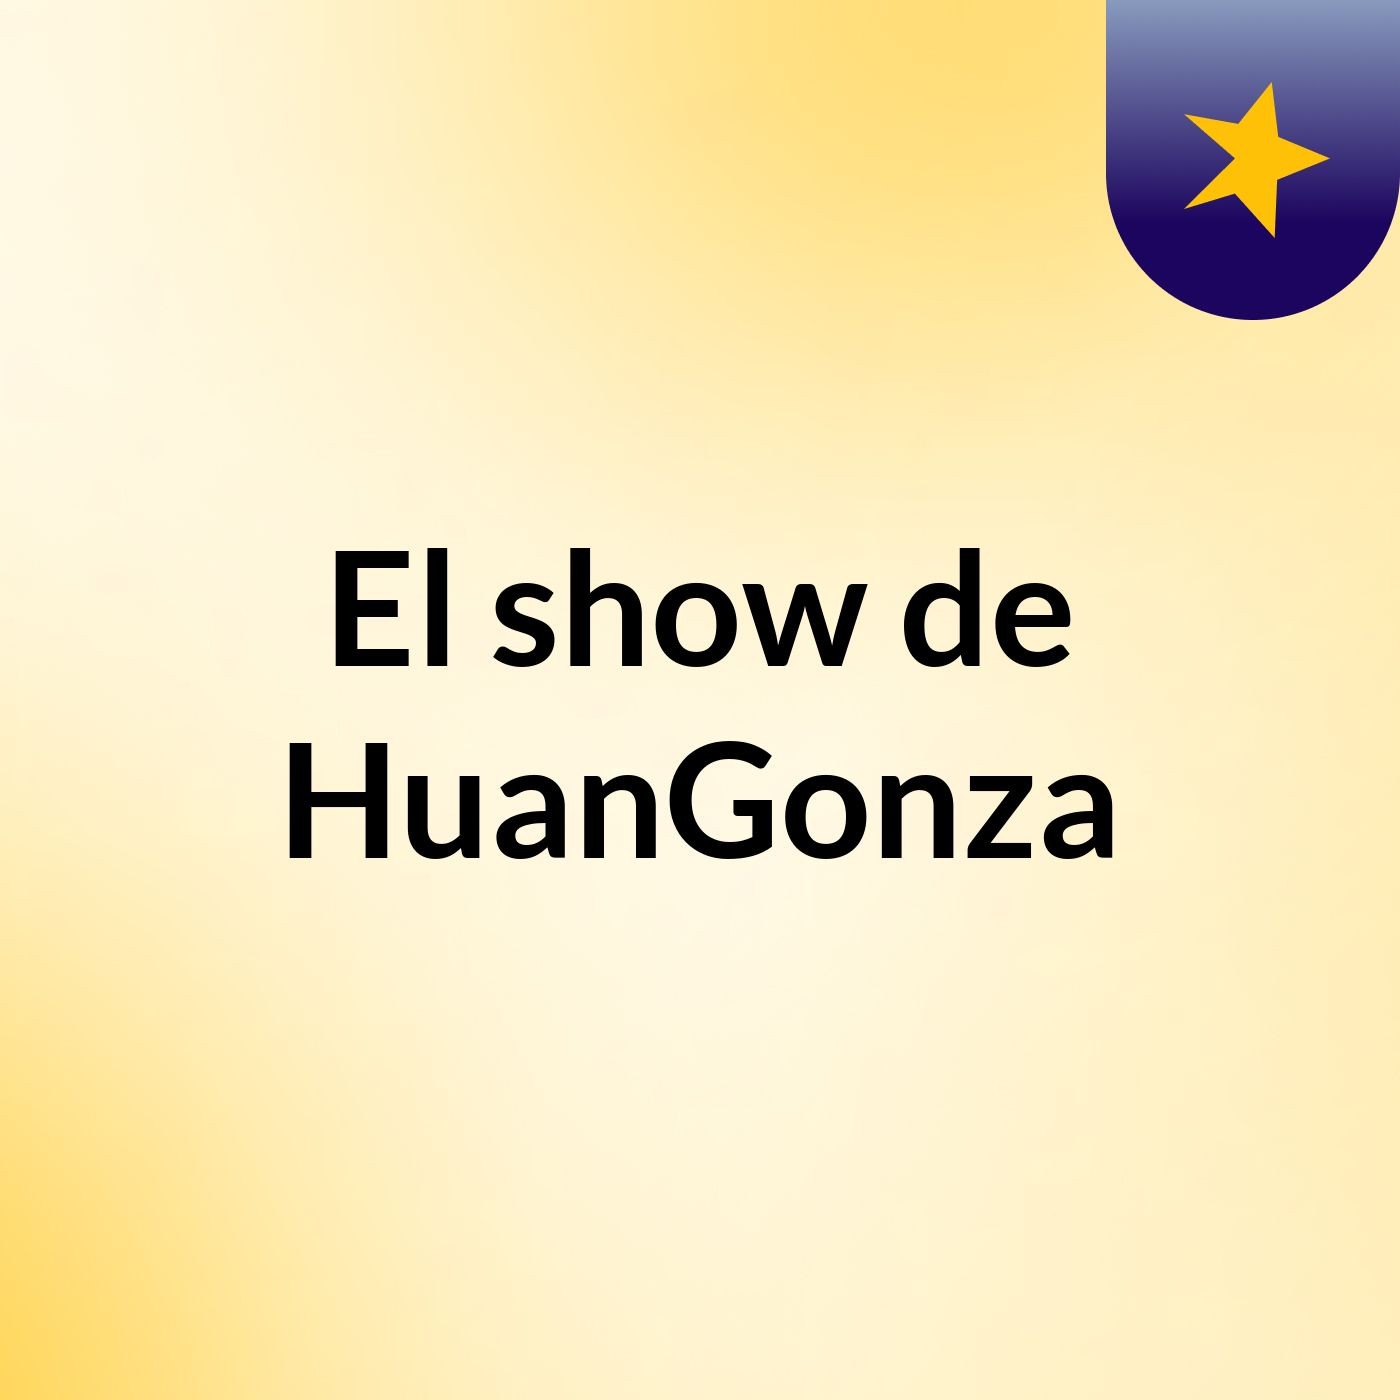 El show de HuanGonza